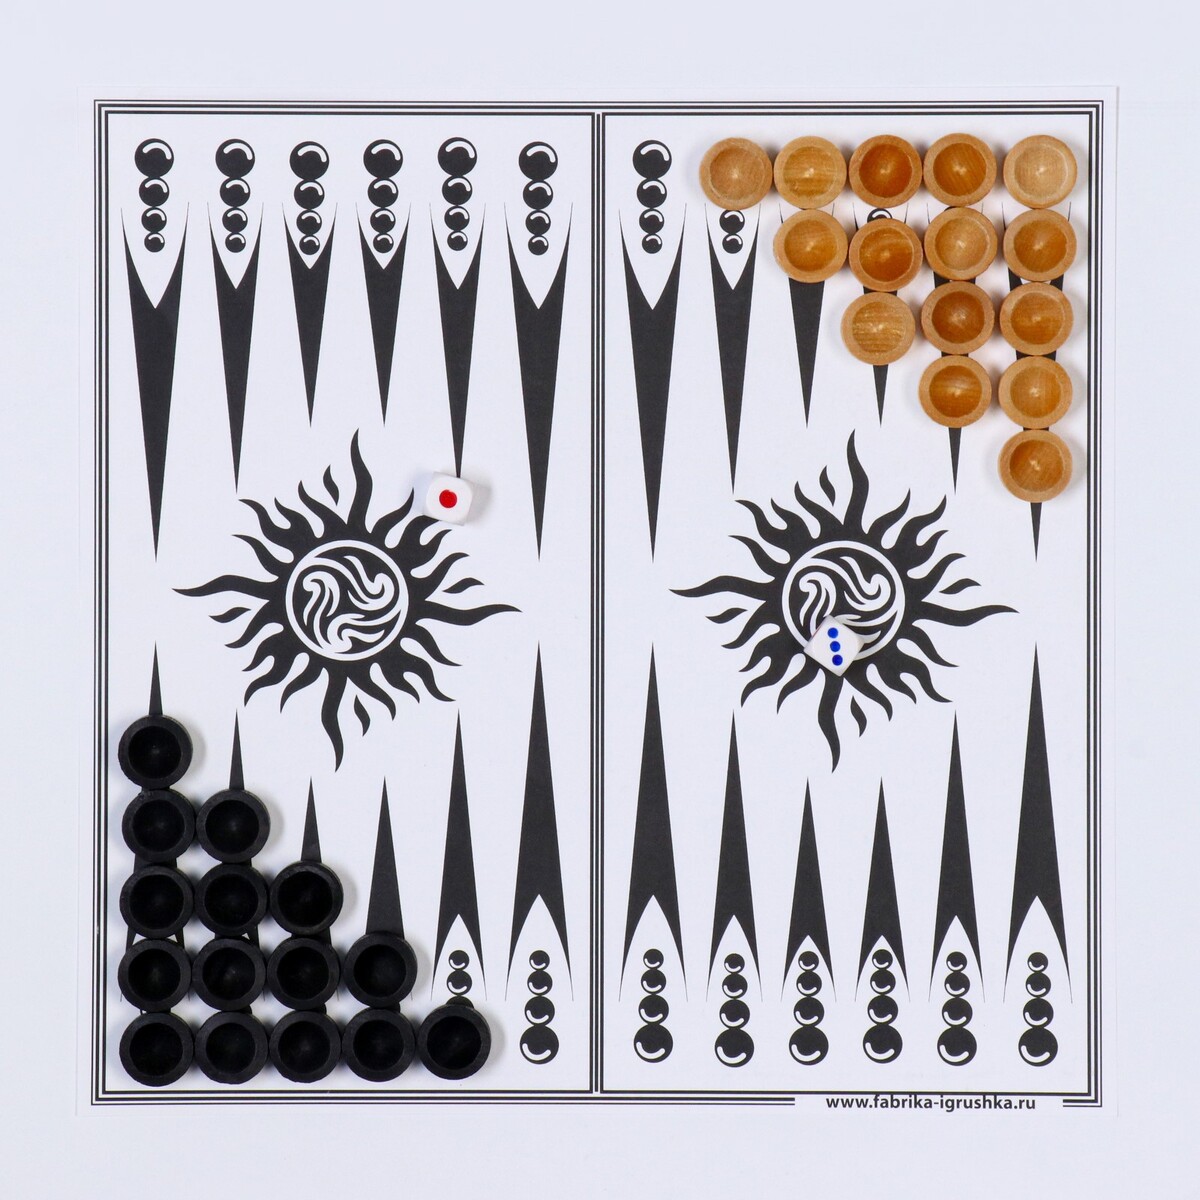 фото Настольная игра 3 в 1: шахматы, шашки, нарды, деревянные фигуры, доска 29.5 х 29.5 см no brand